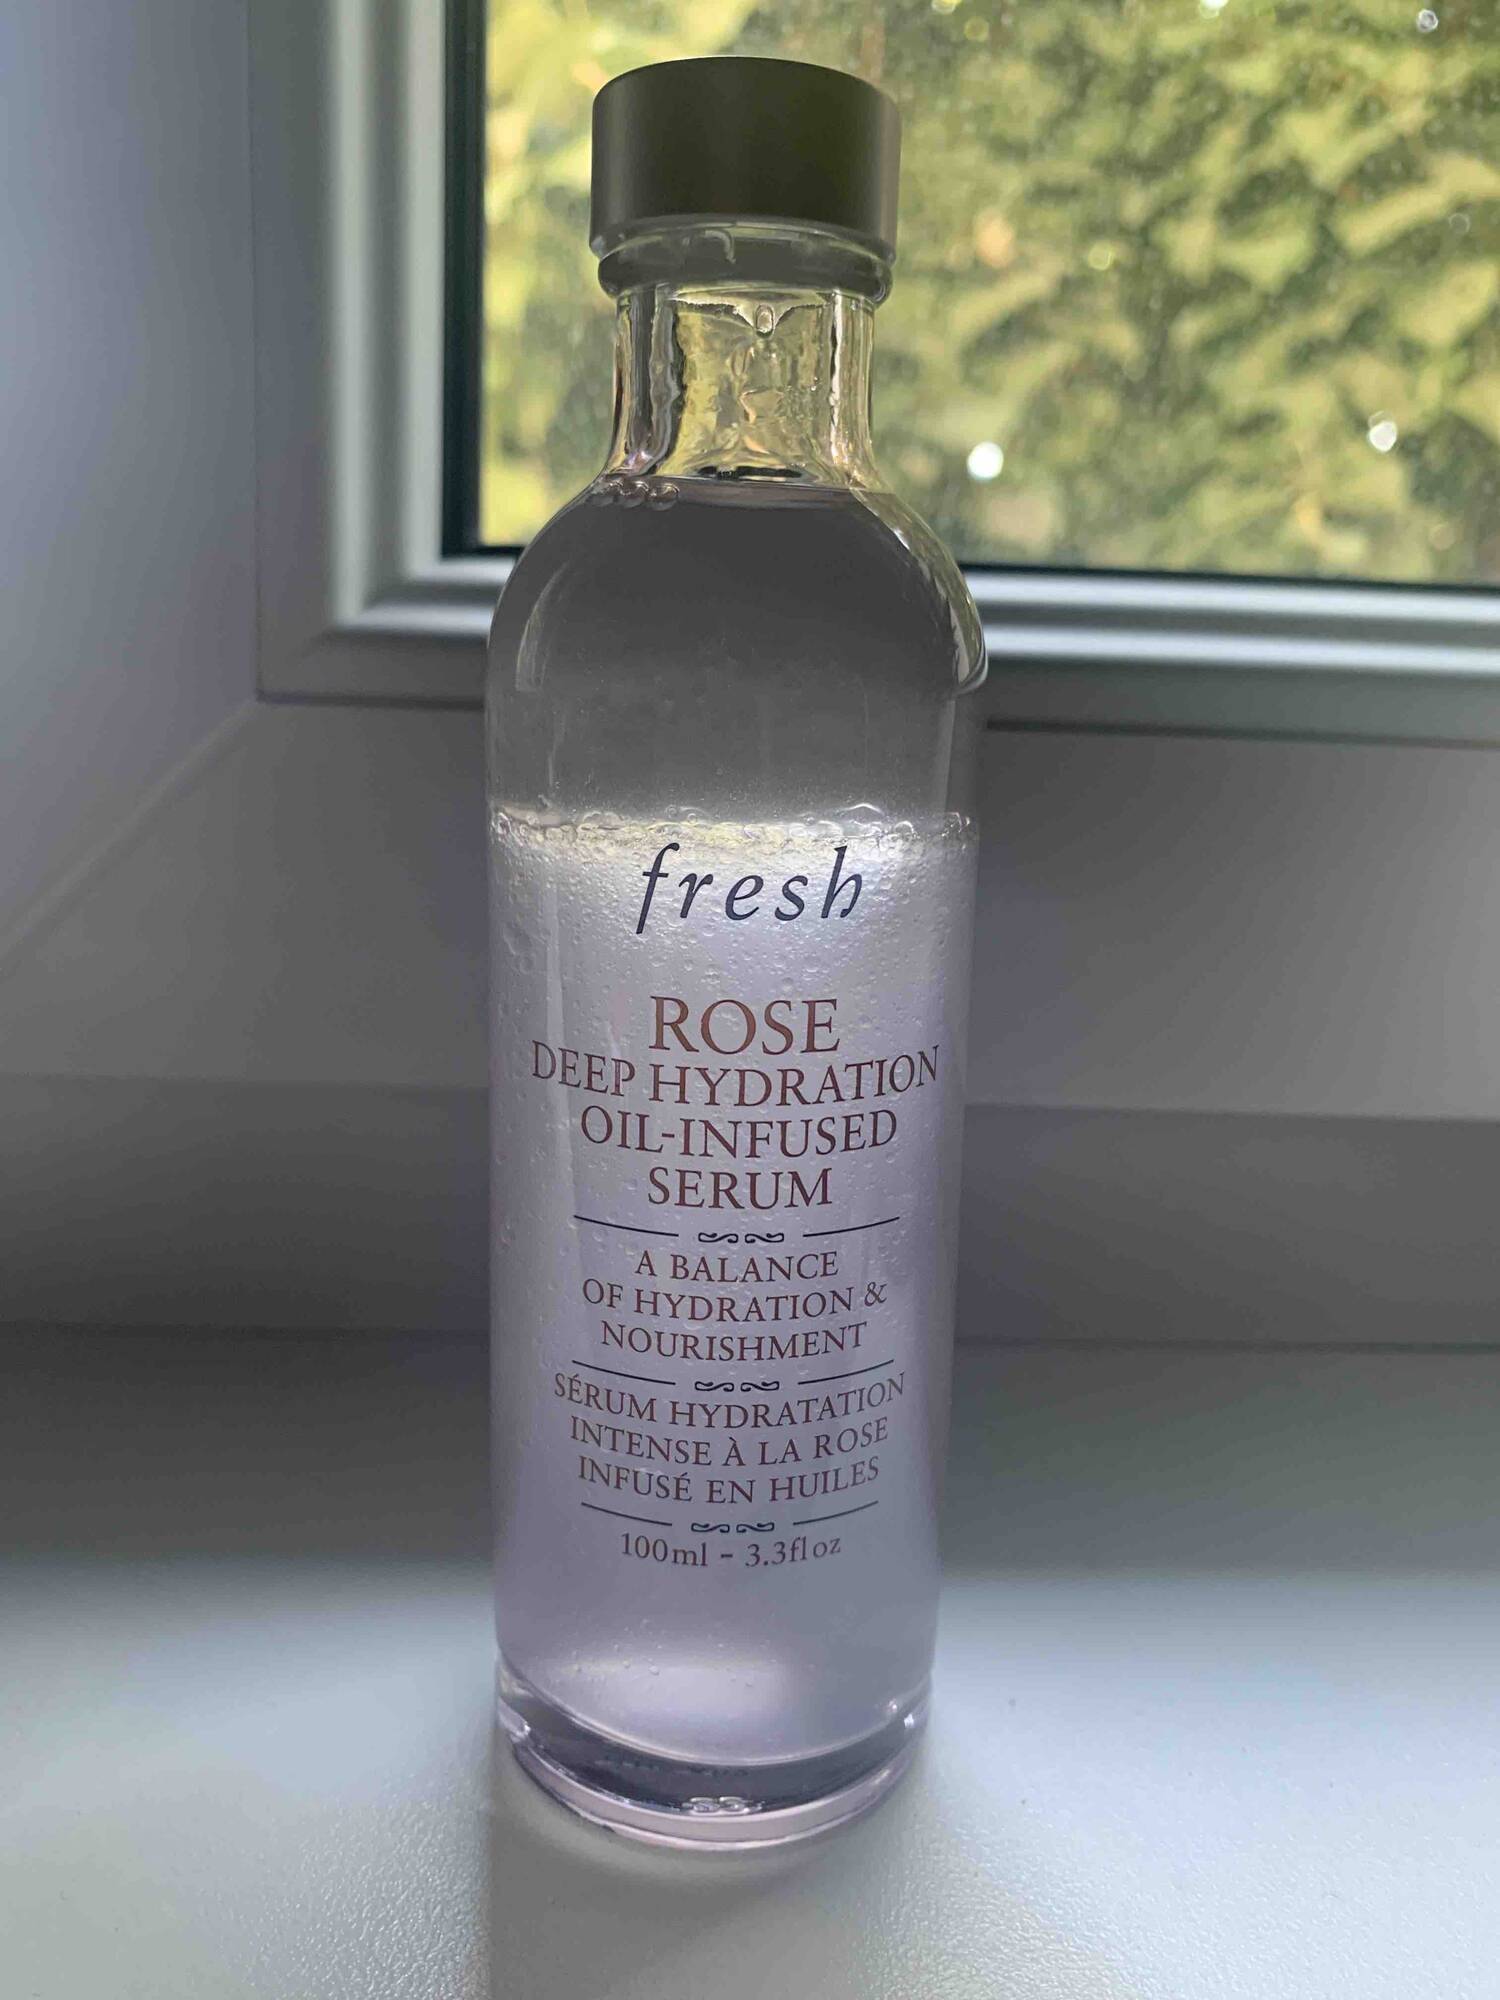 FRESH - Rose - Sérum hydratation intense à la rose infusé en huiles